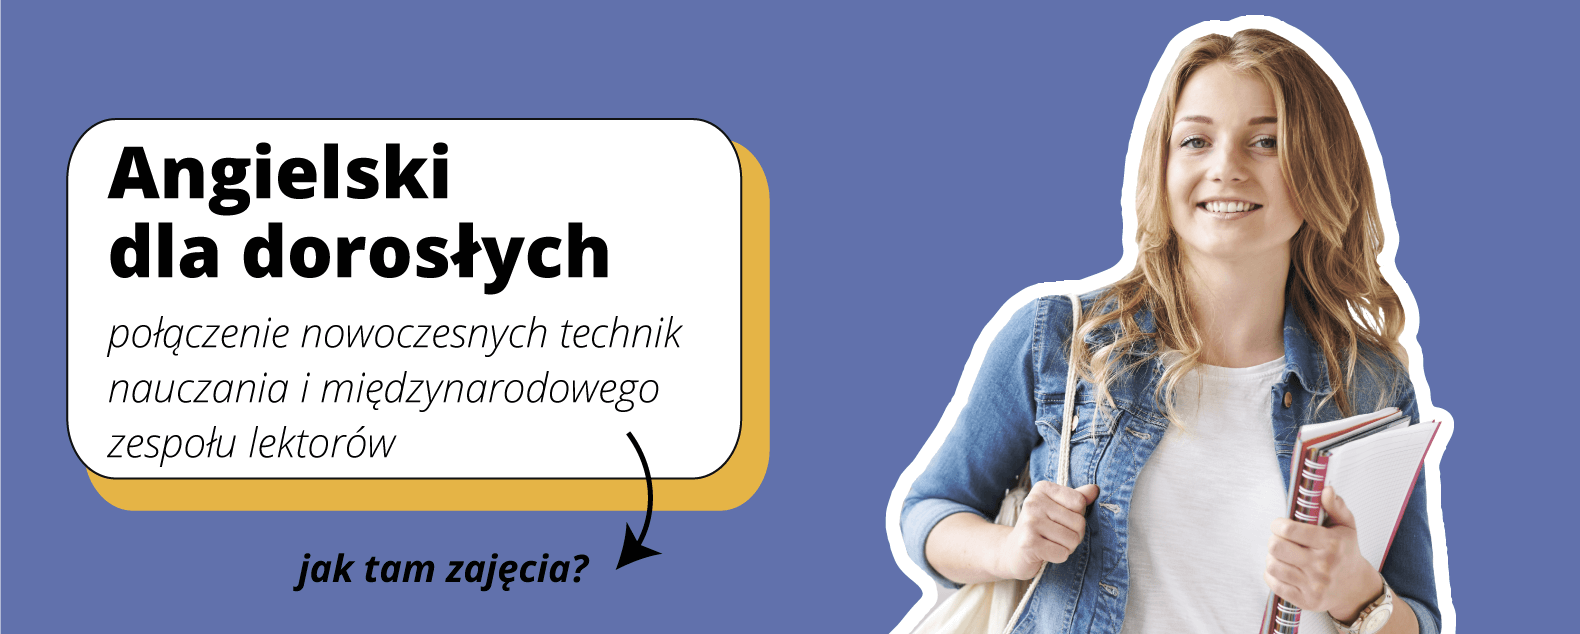 Angielski dla dorosłych - Połączenie nowoczesnych technik nauczania i międzynarodowego zespołu lektorów - jak tam zajęcia - szkoła językowa Wrocław